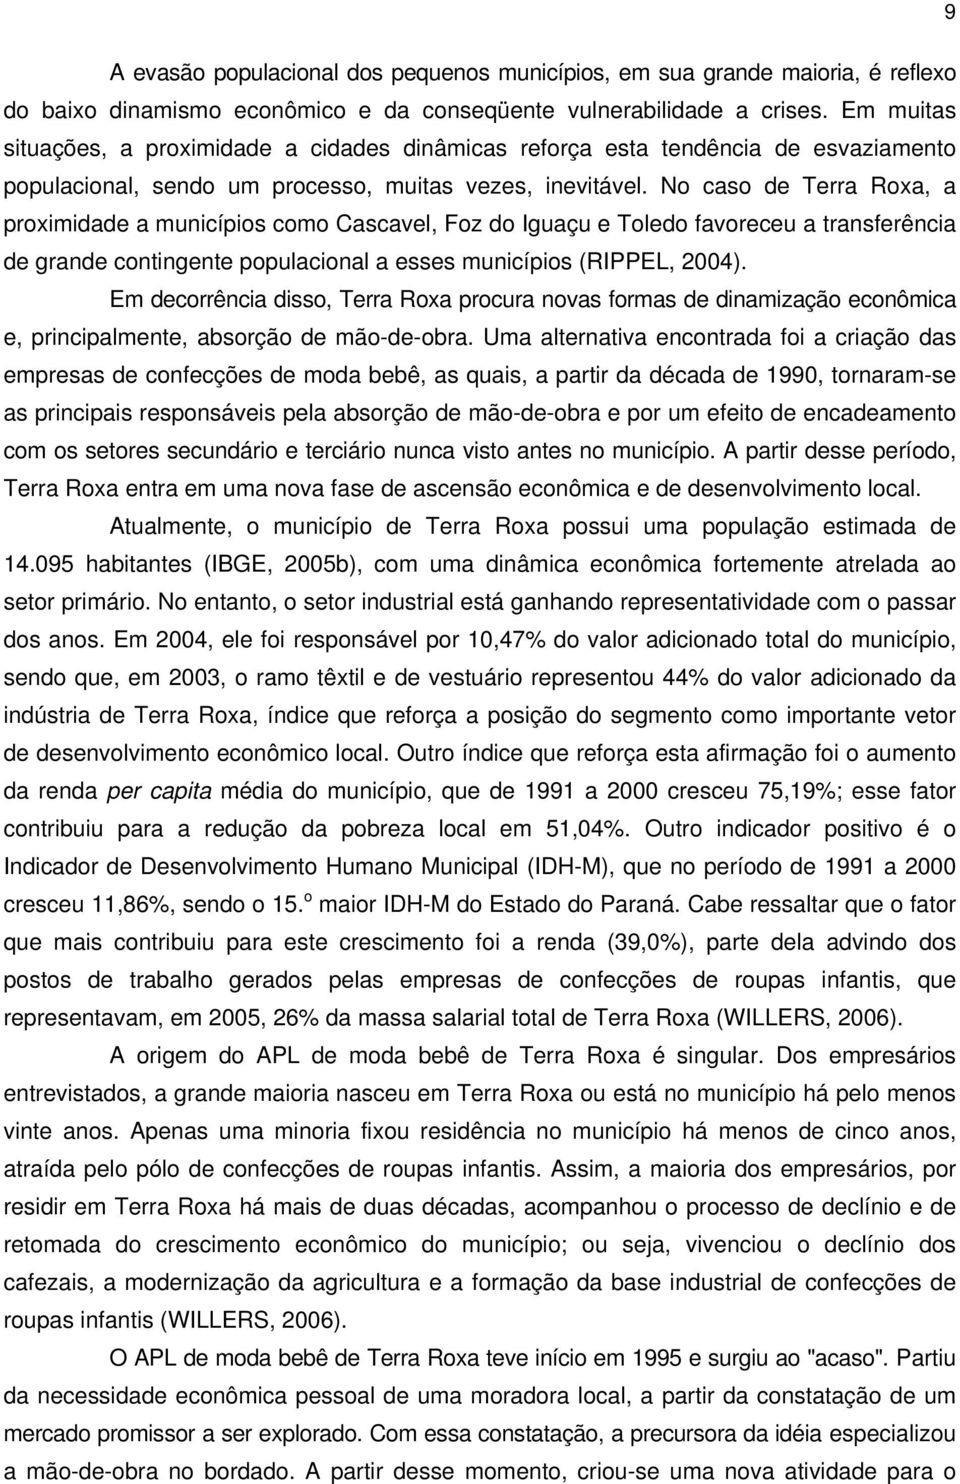 No caso de Terra Roxa, a proximidade a municípios como Cascavel, Foz do Iguaçu e Toledo favoreceu a transferência de grande contingente populacional a esses municípios (RIPPEL, 2004).